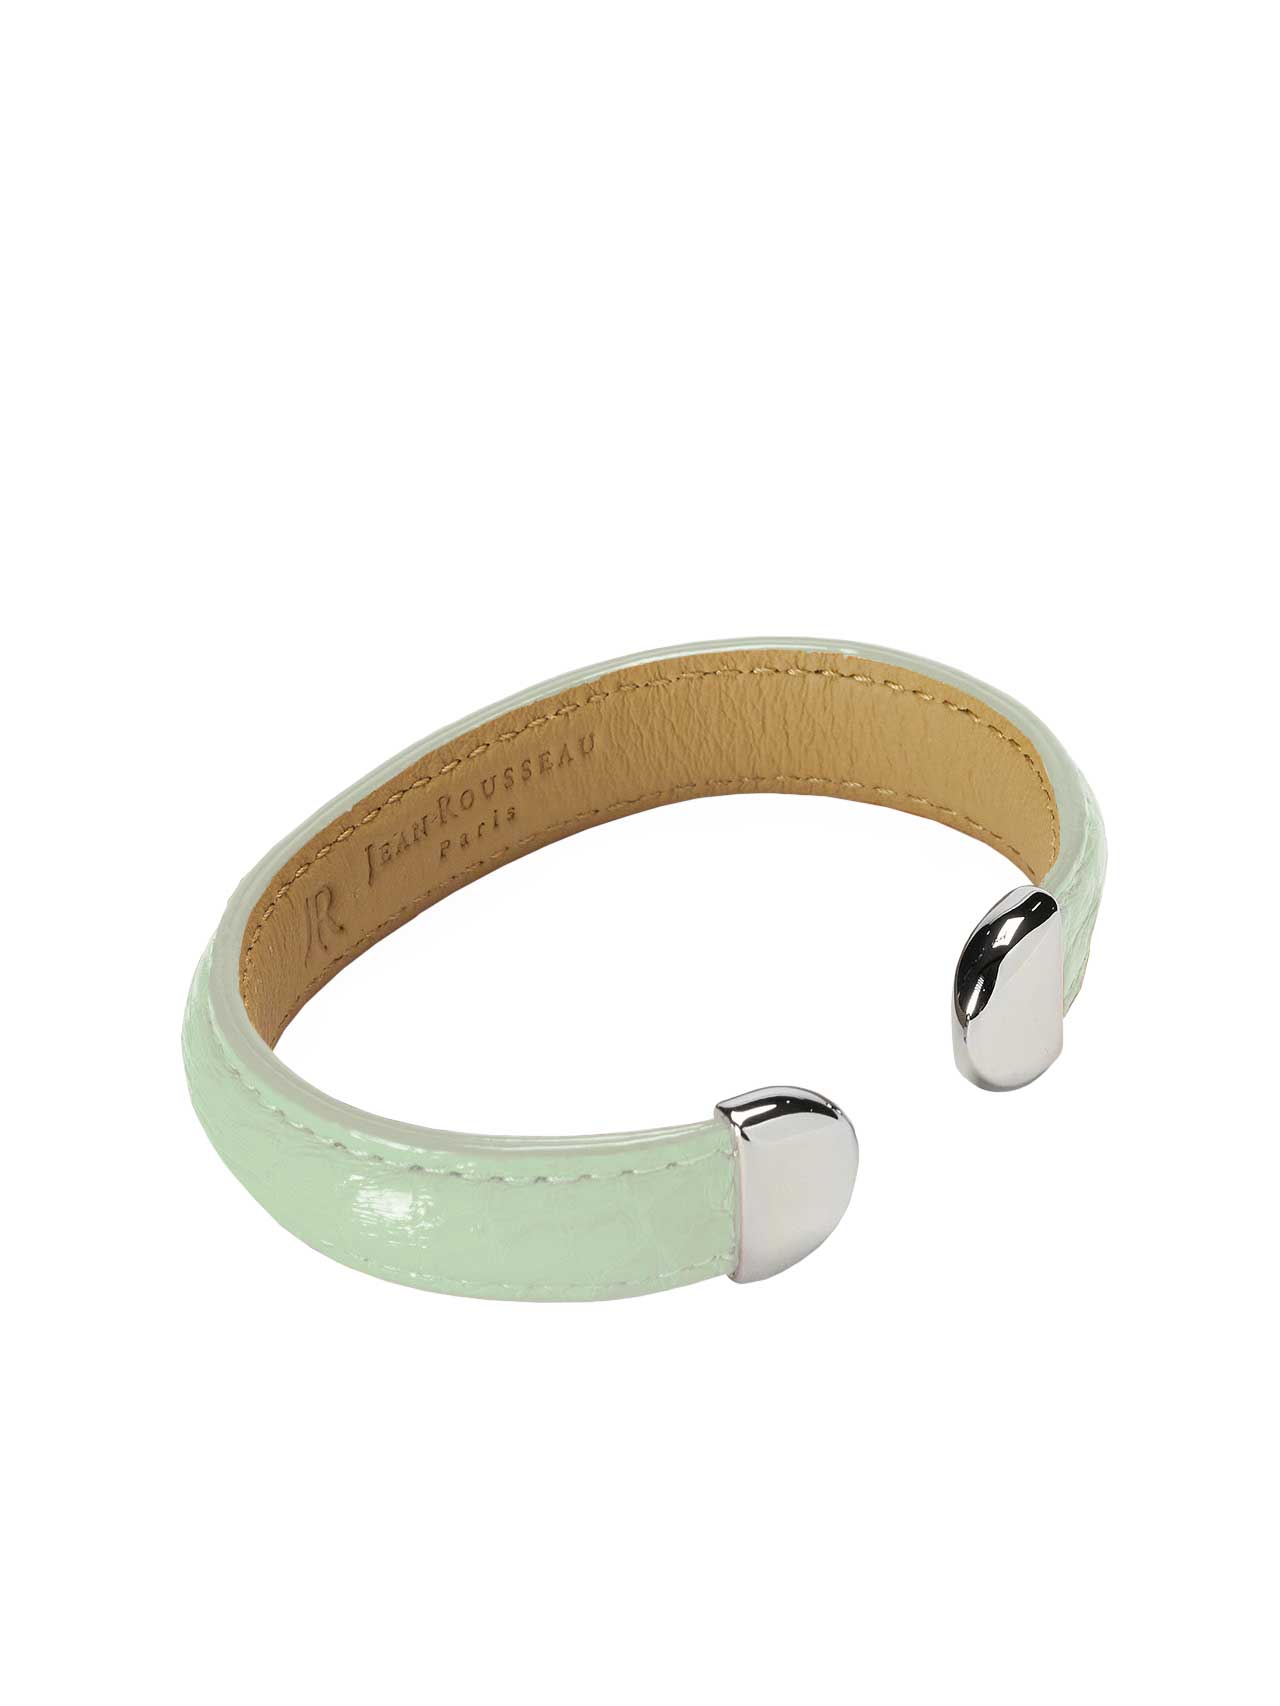 bracelet green leather jean rousseau